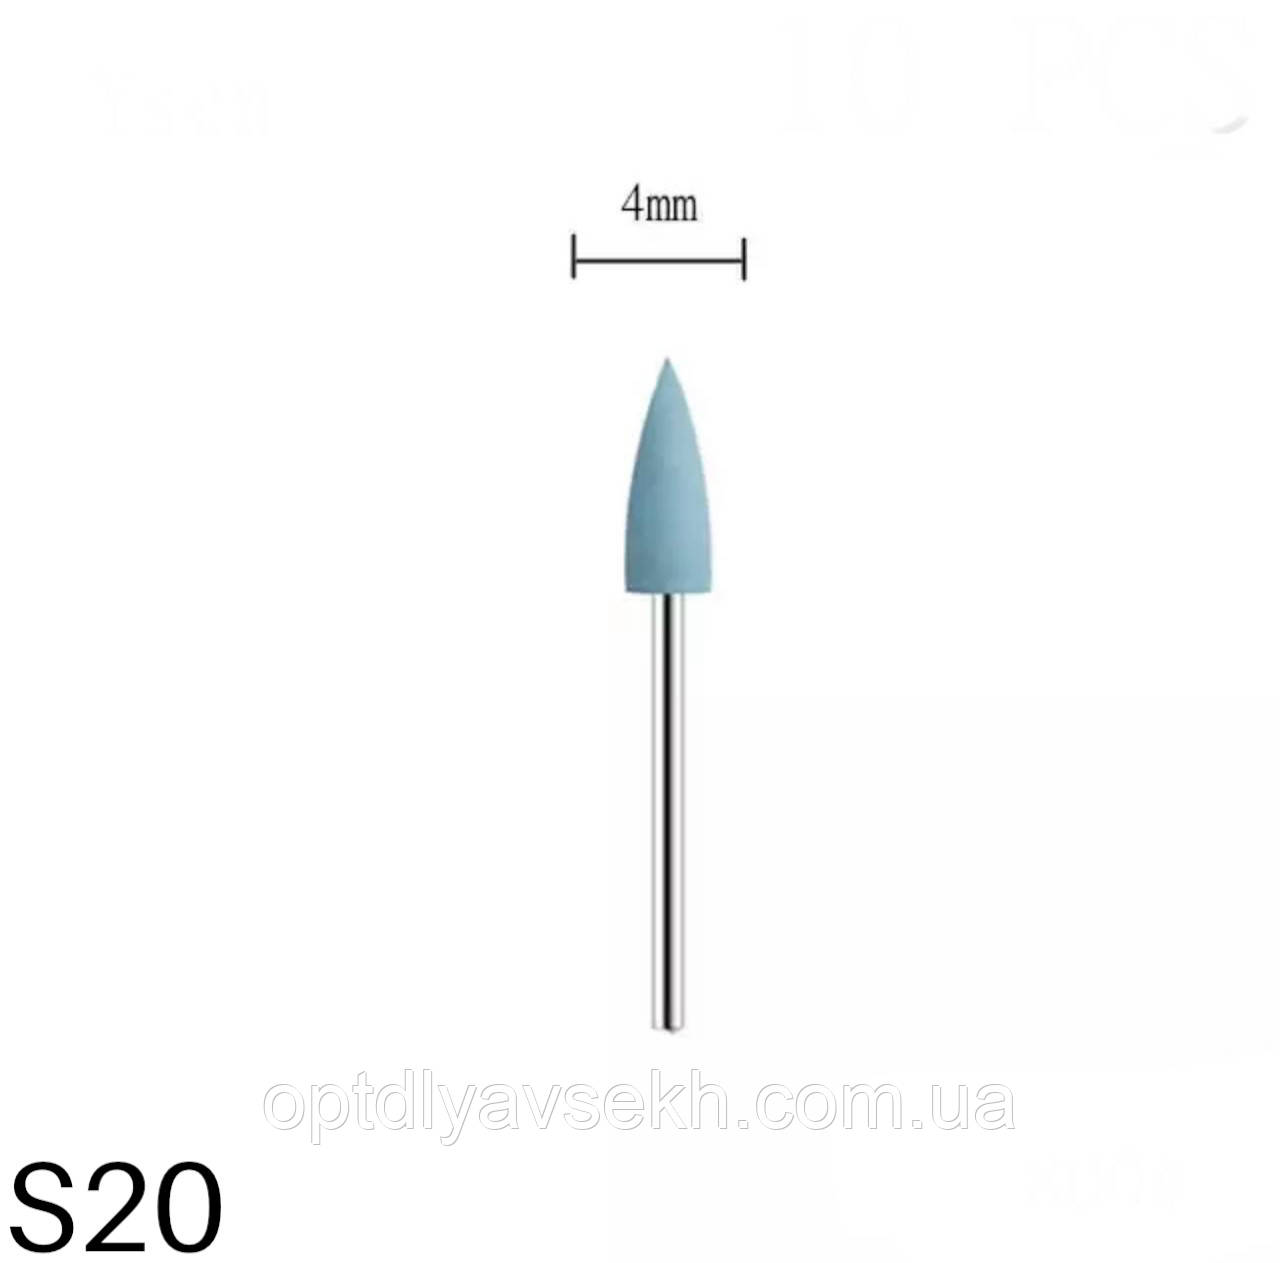 Полірувальна силікнова насадка / Фреза-полірувальник для шліфування нігтів, 1 шт. S20